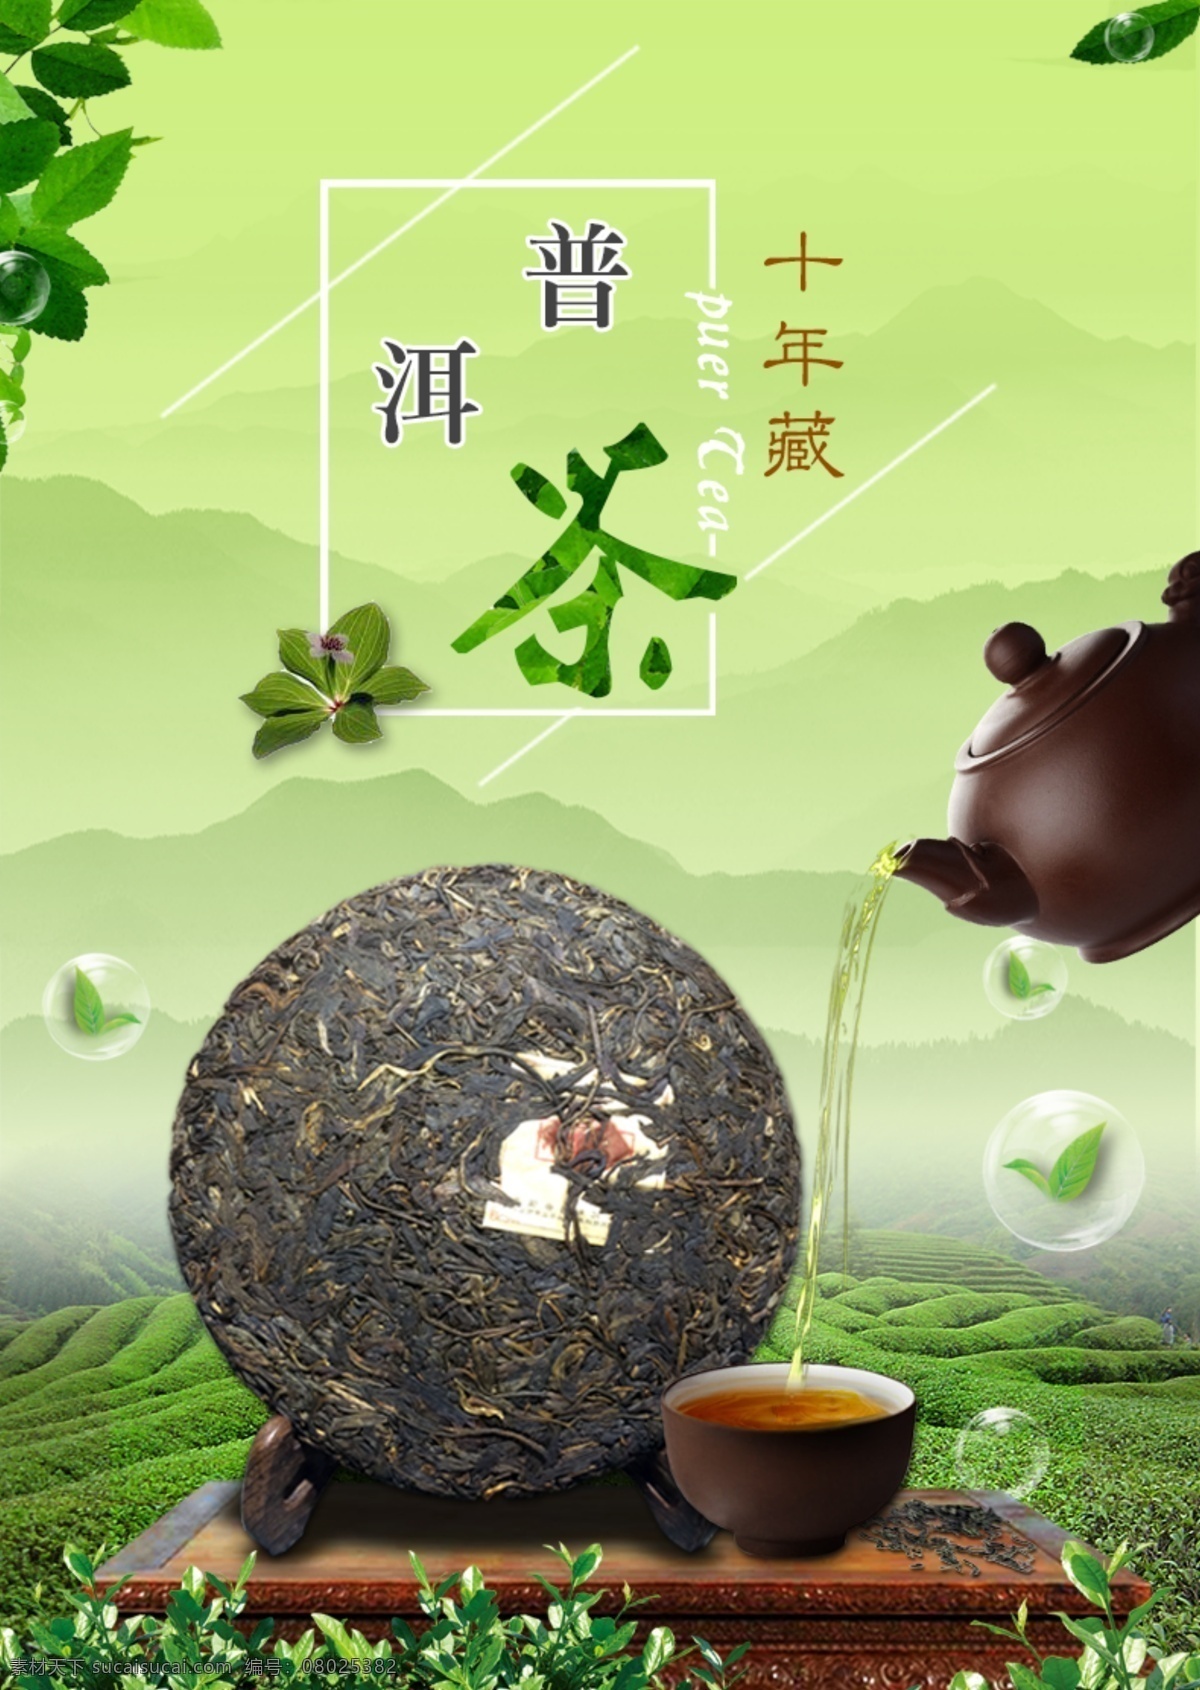 清新茶海报 茶 茶杯 茶道 茶海报 茶海报设计 茶壶 茶具 字体排版 中国风海报